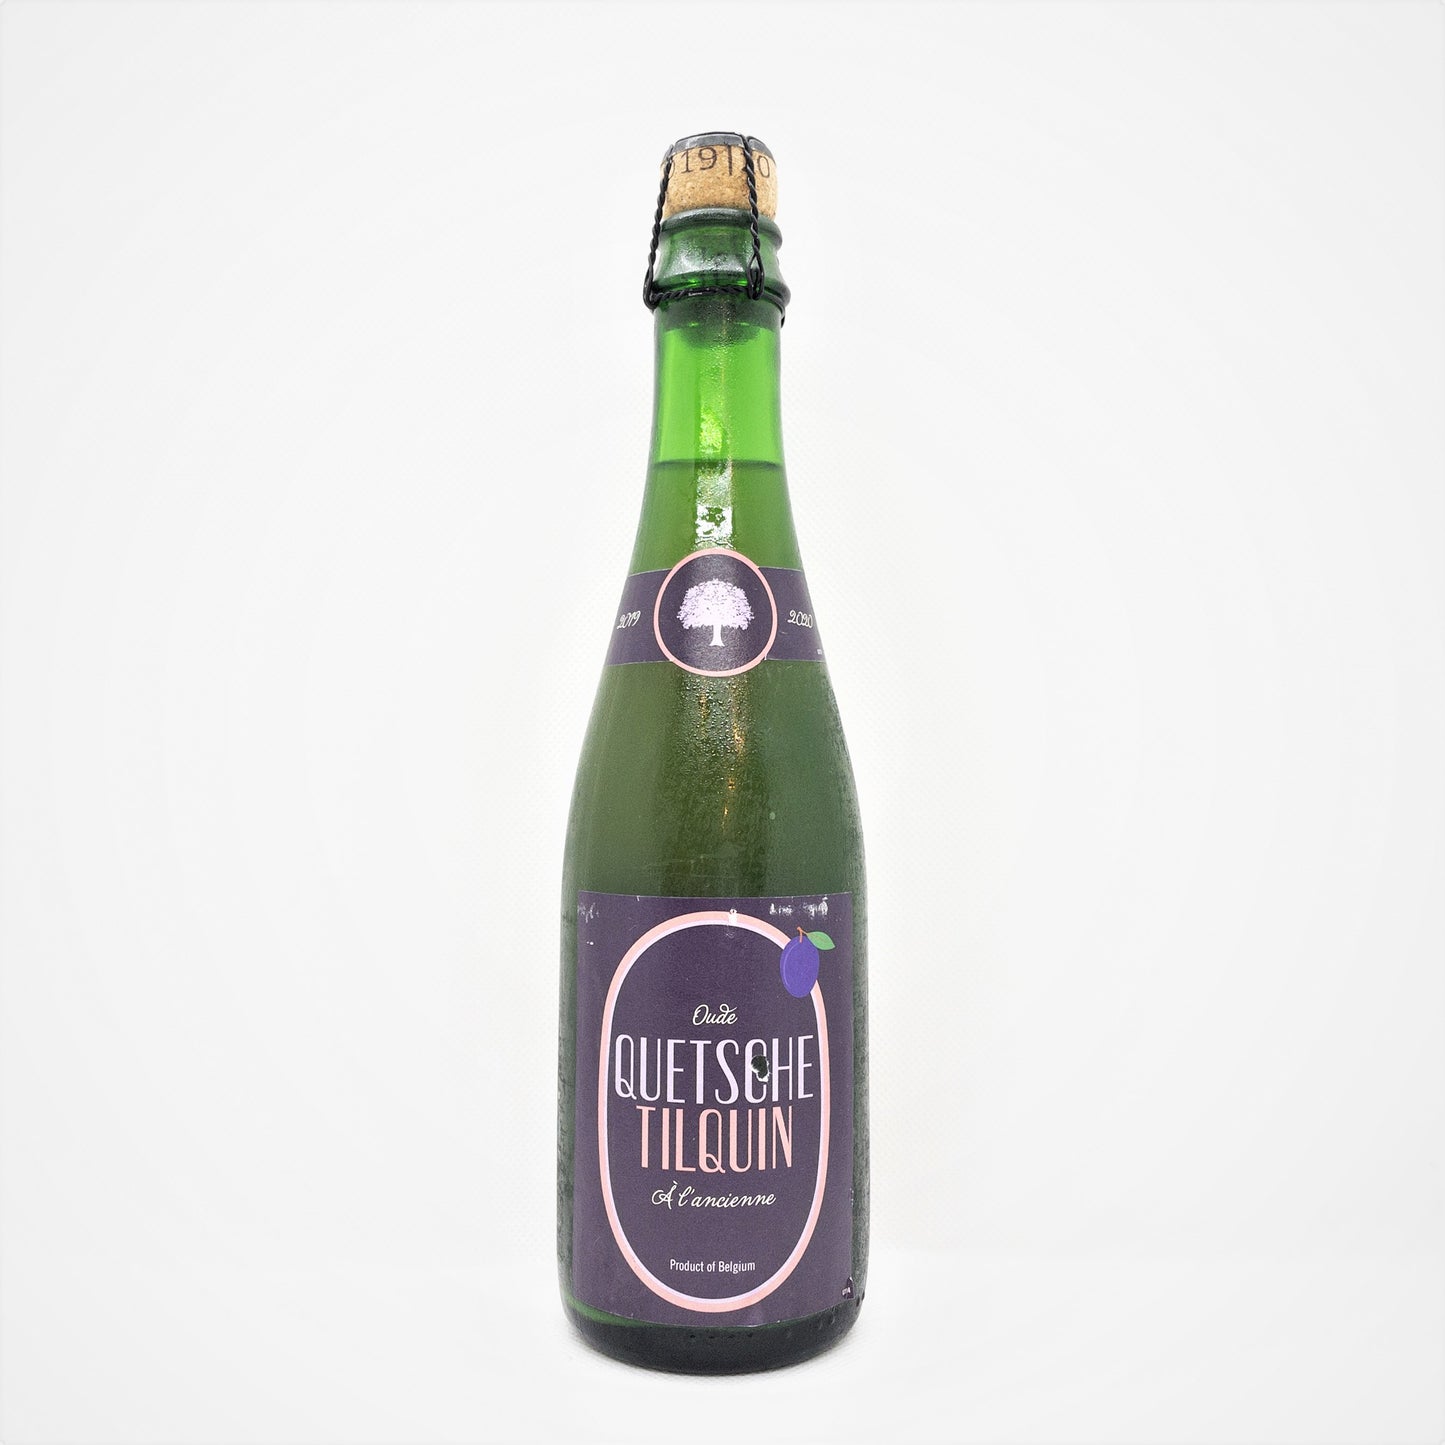 ヒューズリー ティルカン アウドゥ クエッチ ティルカン / Gueuzerie Tilquin Oude Quetsche Tilquin Bottle 375ml